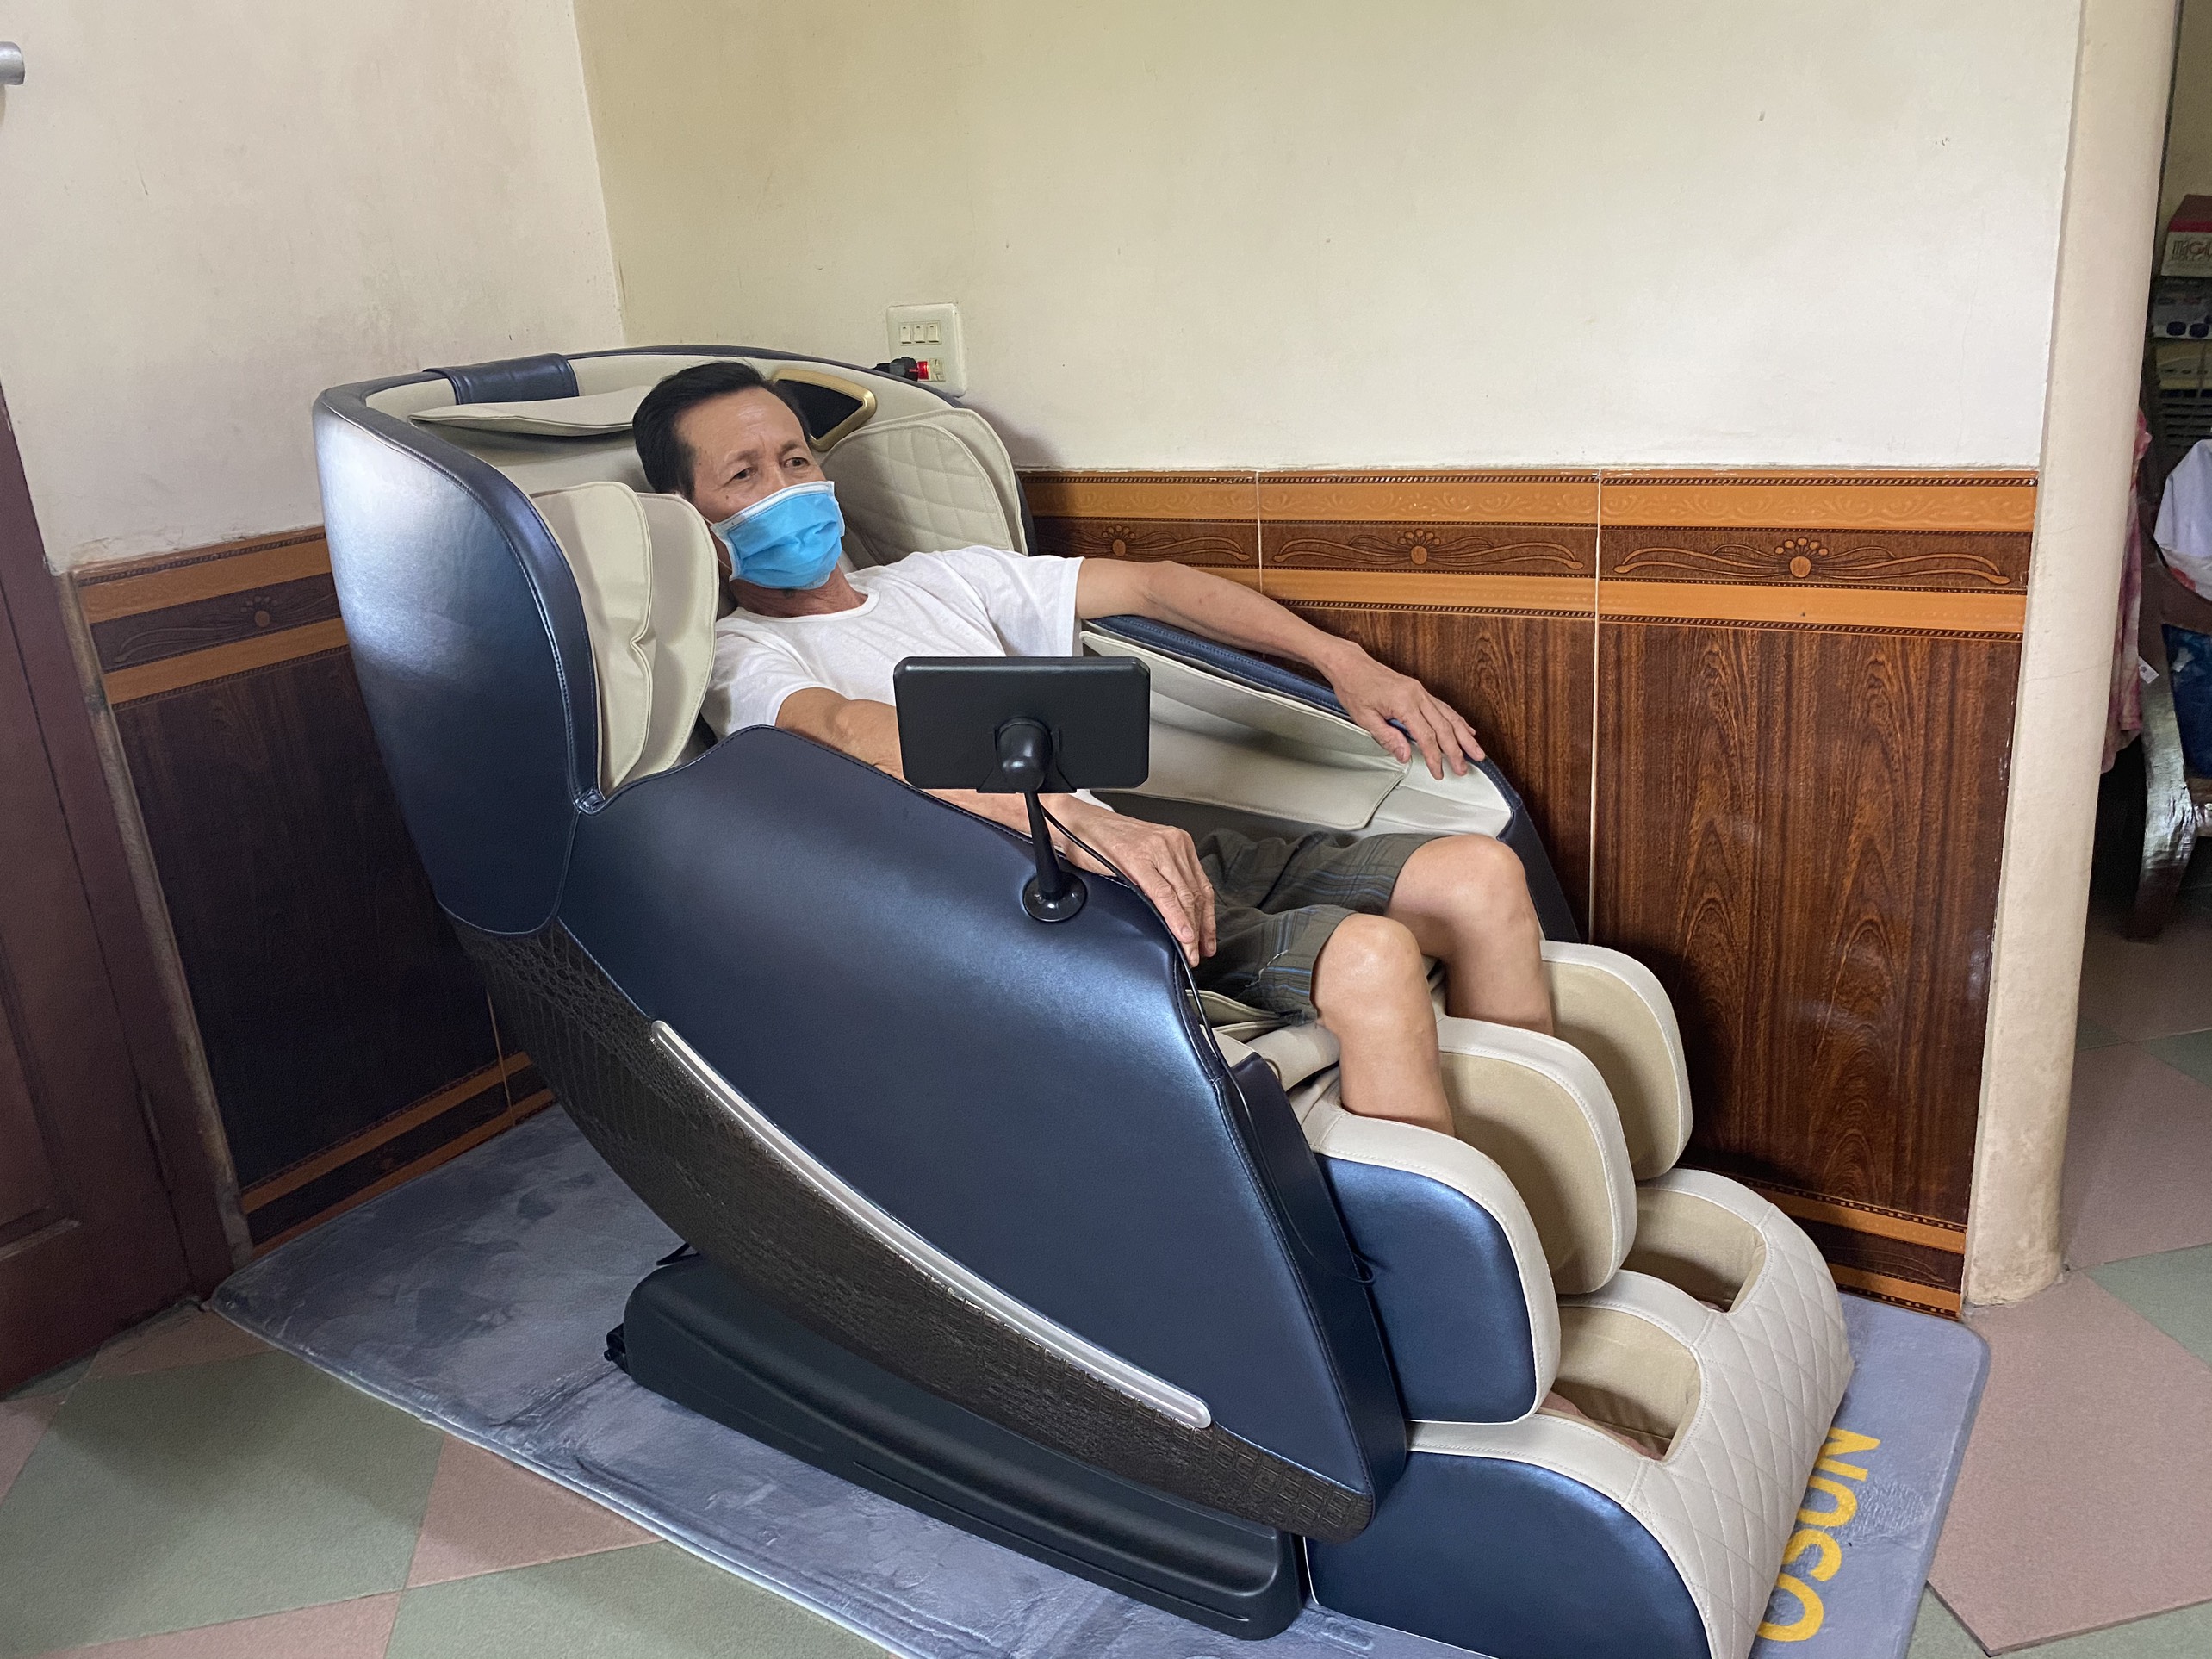 Ghế massage toàn thân OSUN SK-266 Tặng kèm Xe đạp tập + Bạt phủ ghế + Bình xịt vệ sinh ghế + Thảm kê ghế